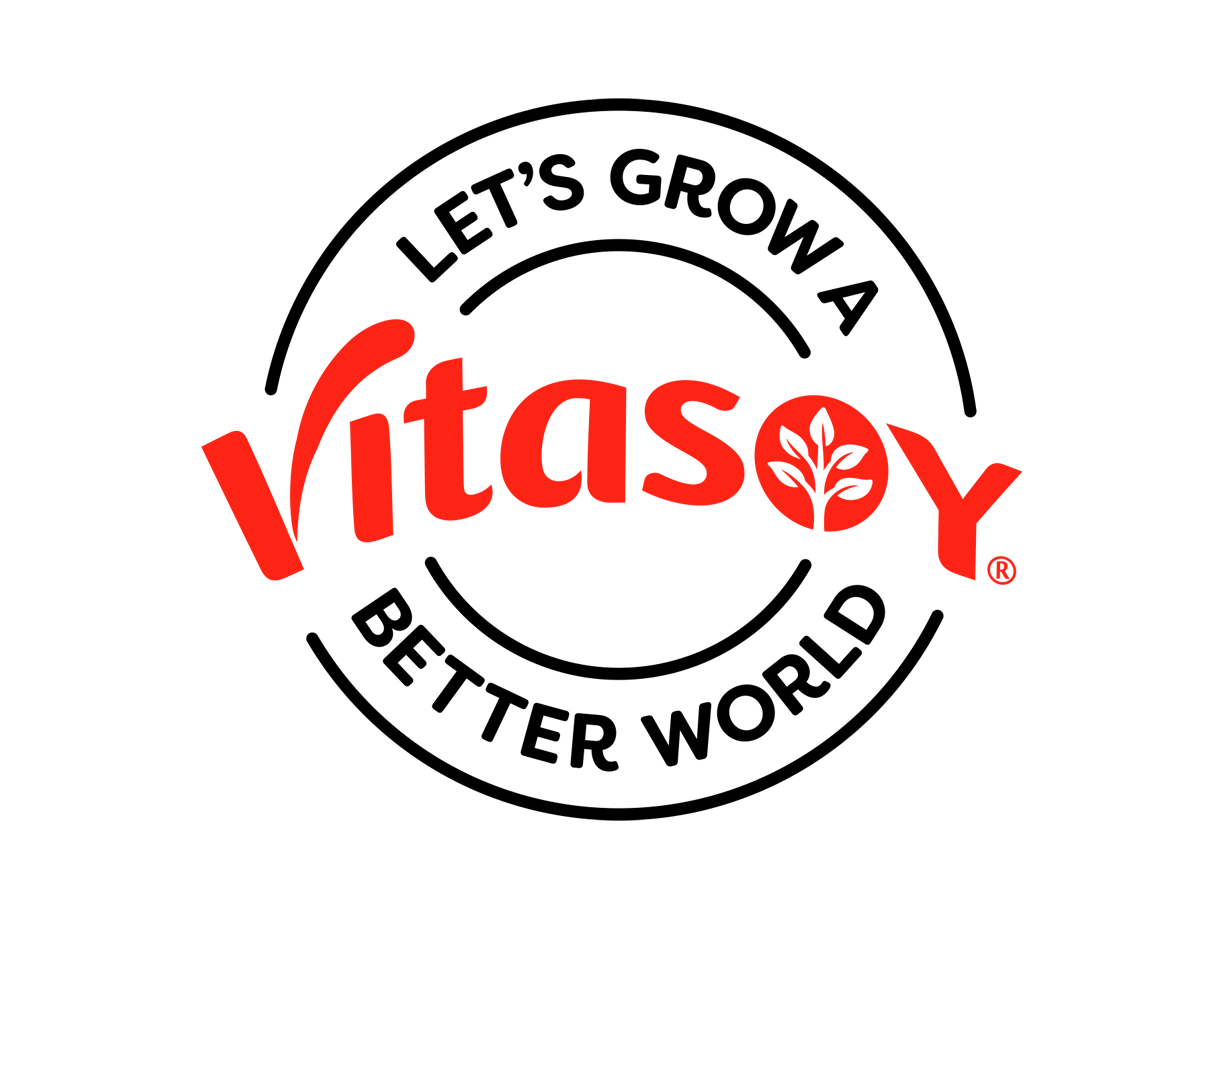 Vitasoy